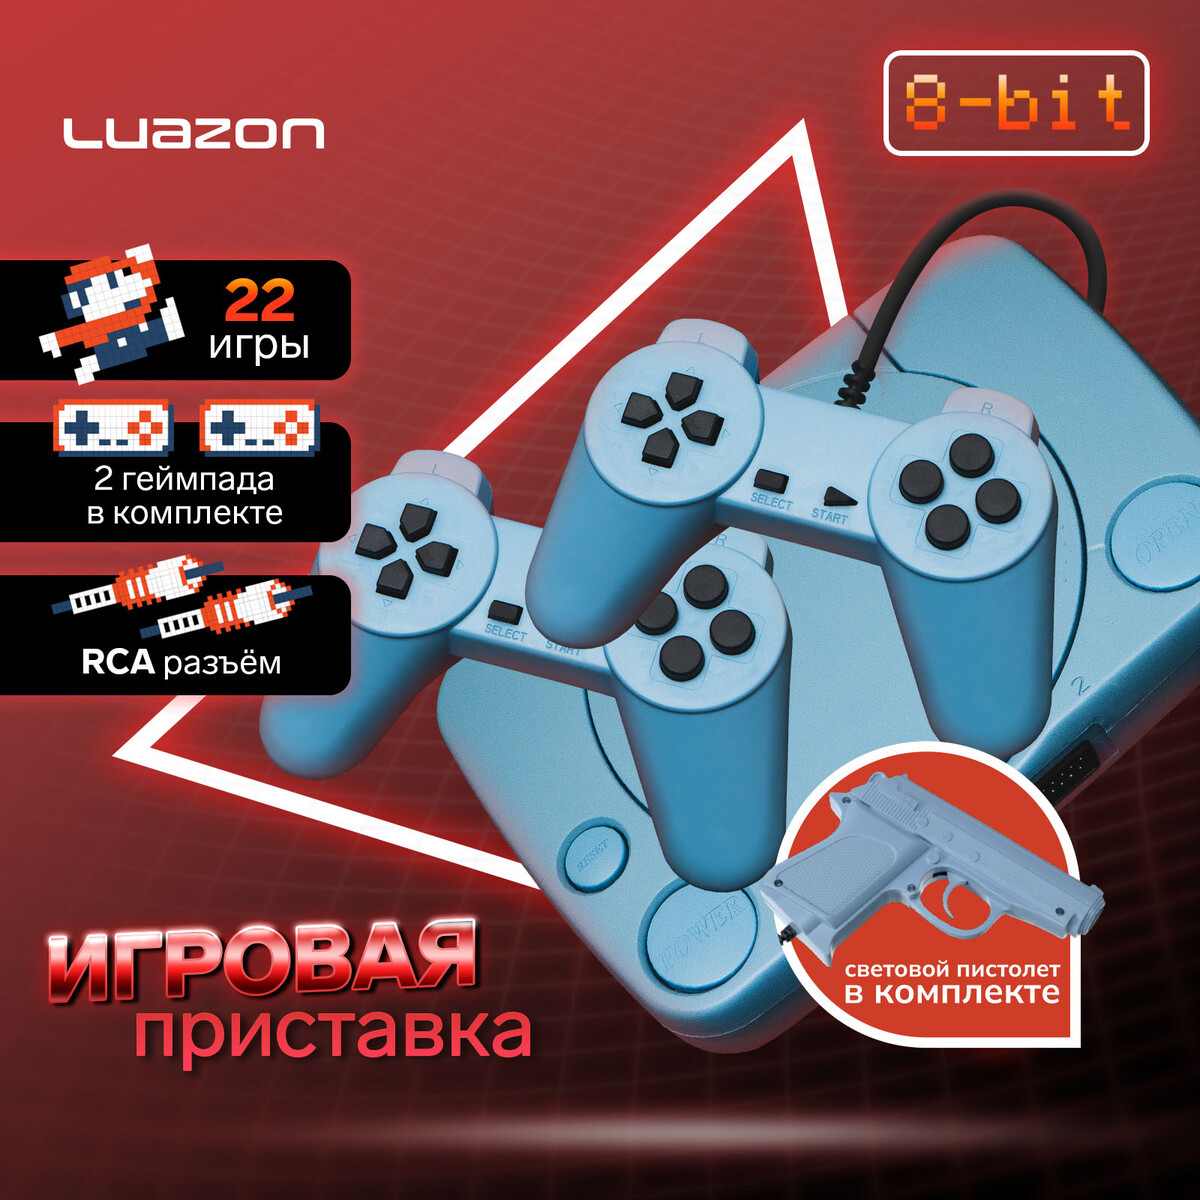 Игровая приставка luazon game-1, 8 бит, в комплекте 2 джойстика и пистолет, 22 игры, серая the god game